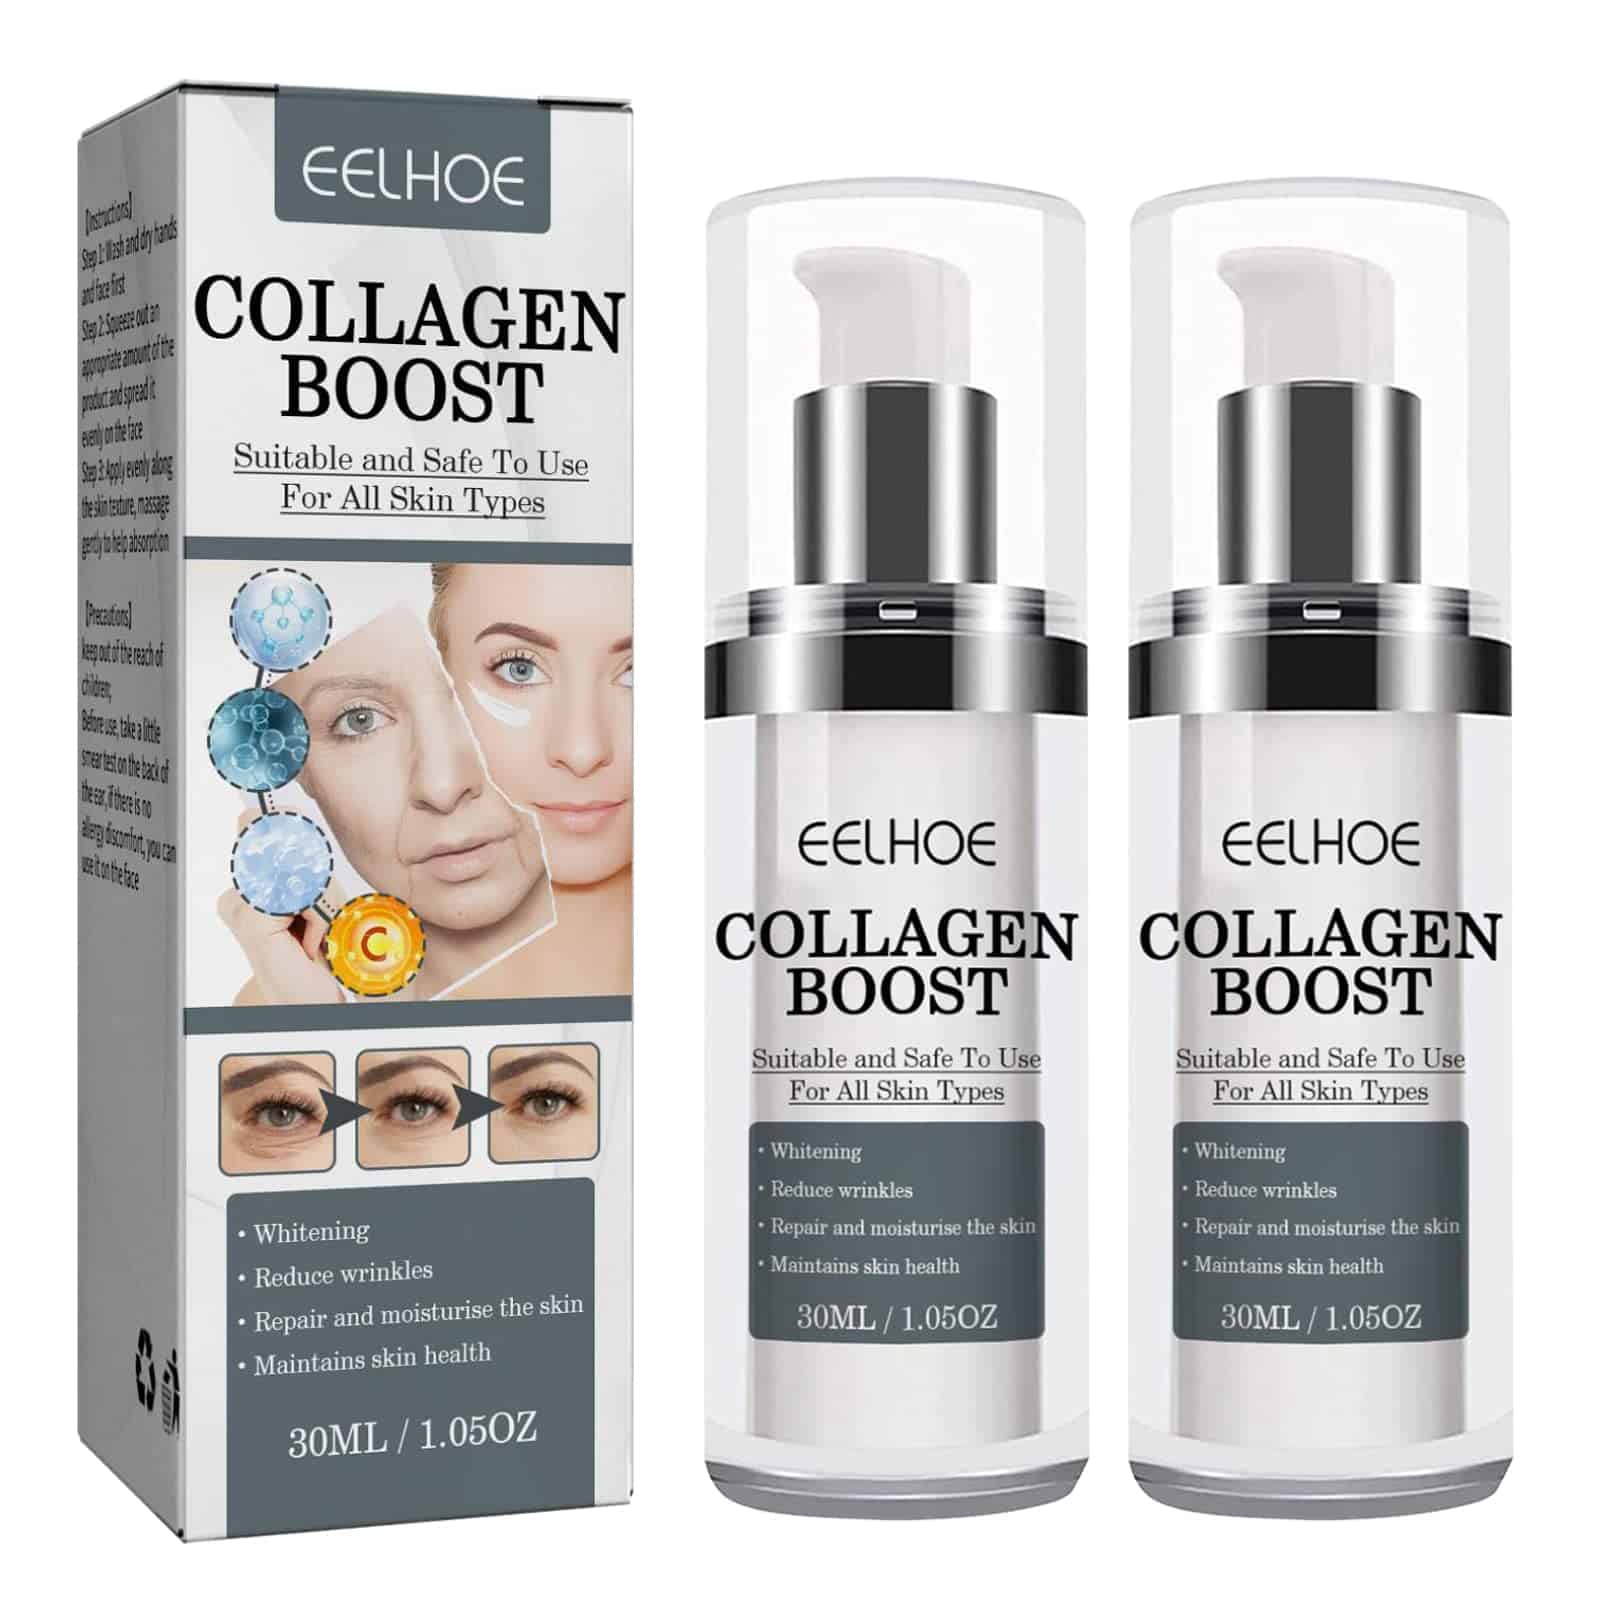 How to apply Eelhoe Collagen Boost?